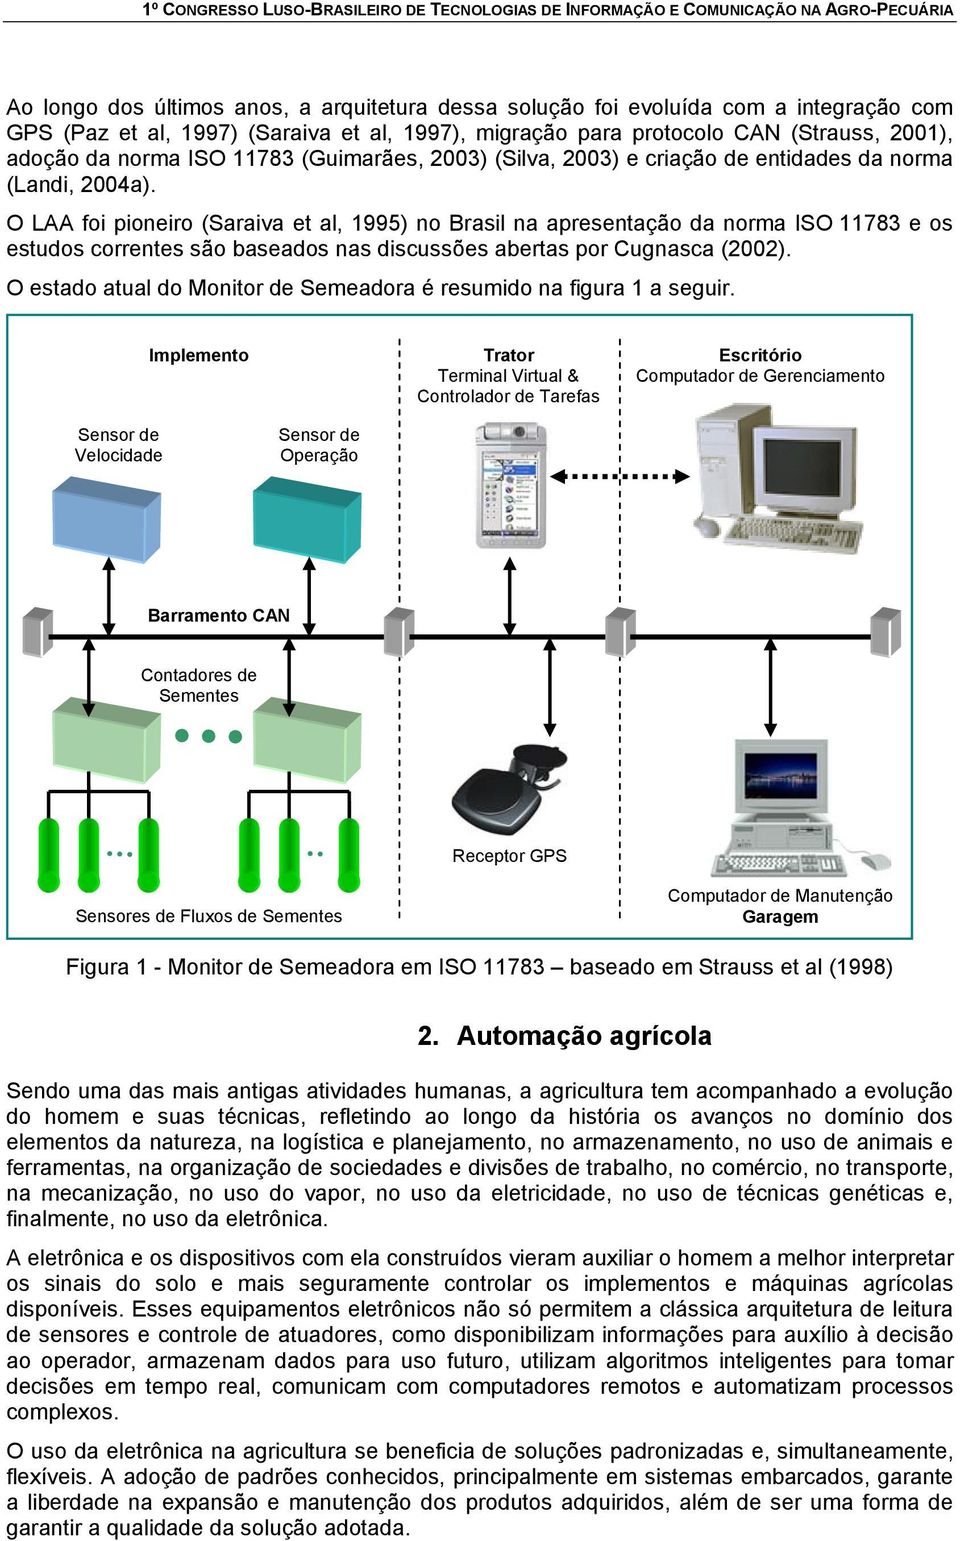 O LAA foi pioneiro (Saraiva et al, 1995) no Brasil na apresentação da norma ISO 11783 e os estudos correntes são baseados nas discussões abertas por Cugnasca (2002).